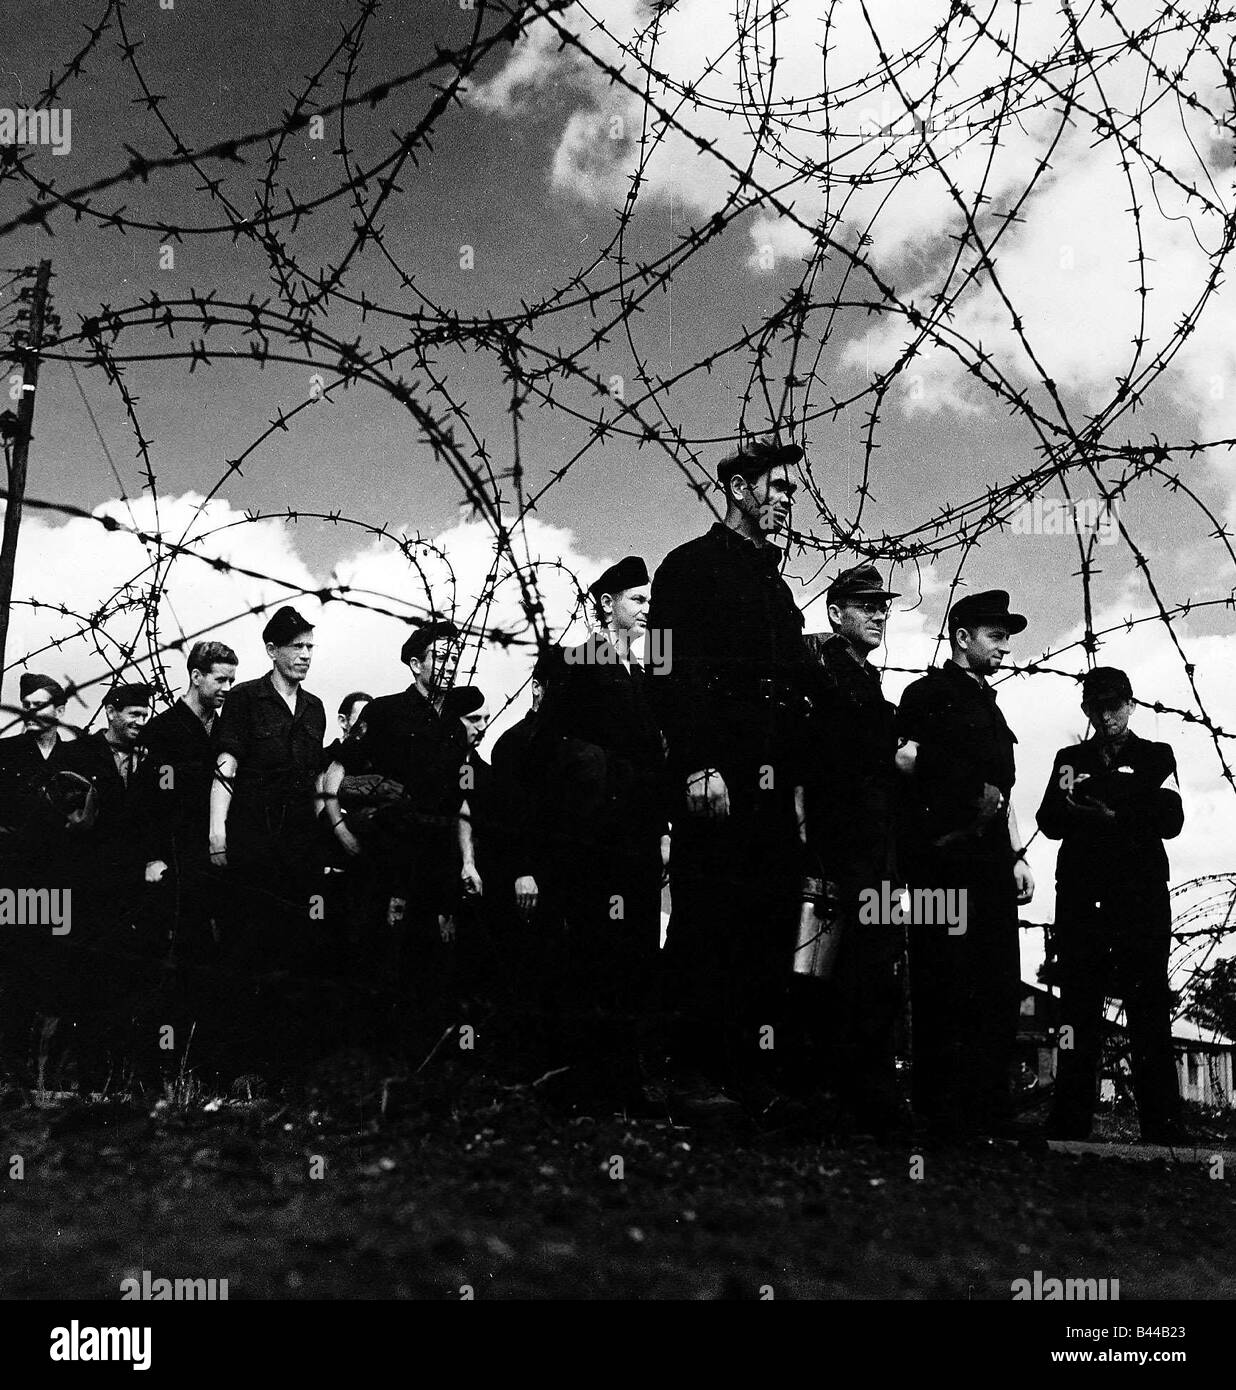 WW2 i prigionieri di guerra tedeschi in un campo di prigionia permanente per l'attenzione nelle loro divise dietro al filo spinato Foto Stock